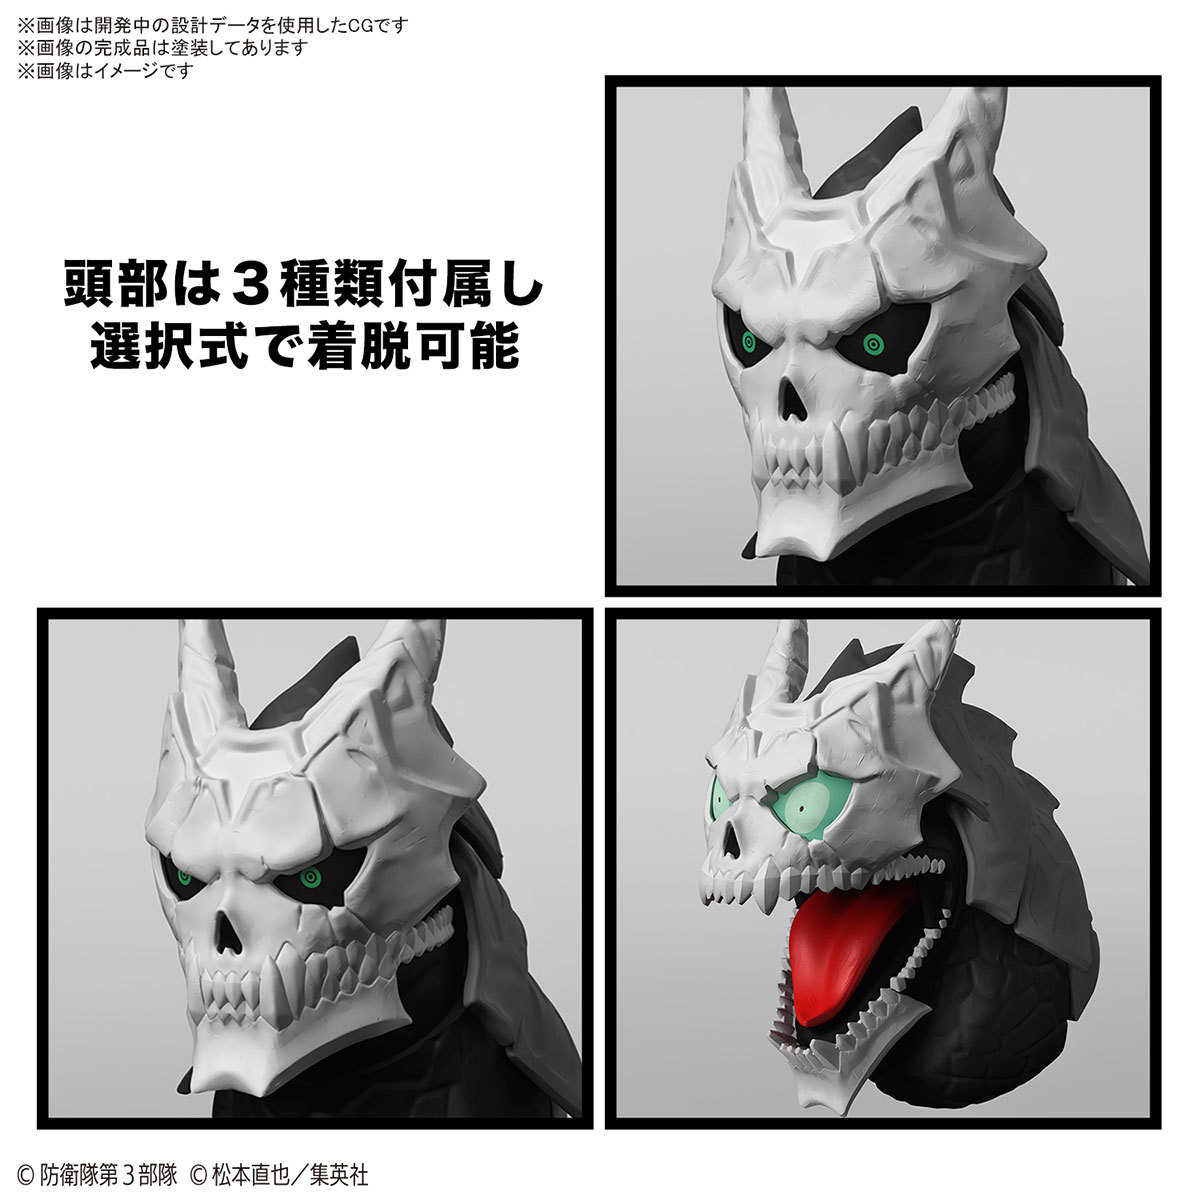 【自由模型】全新現貨 BANDAI 組裝模型 Figure-rise Standard 怪獸8號 Frs 怪獸8號